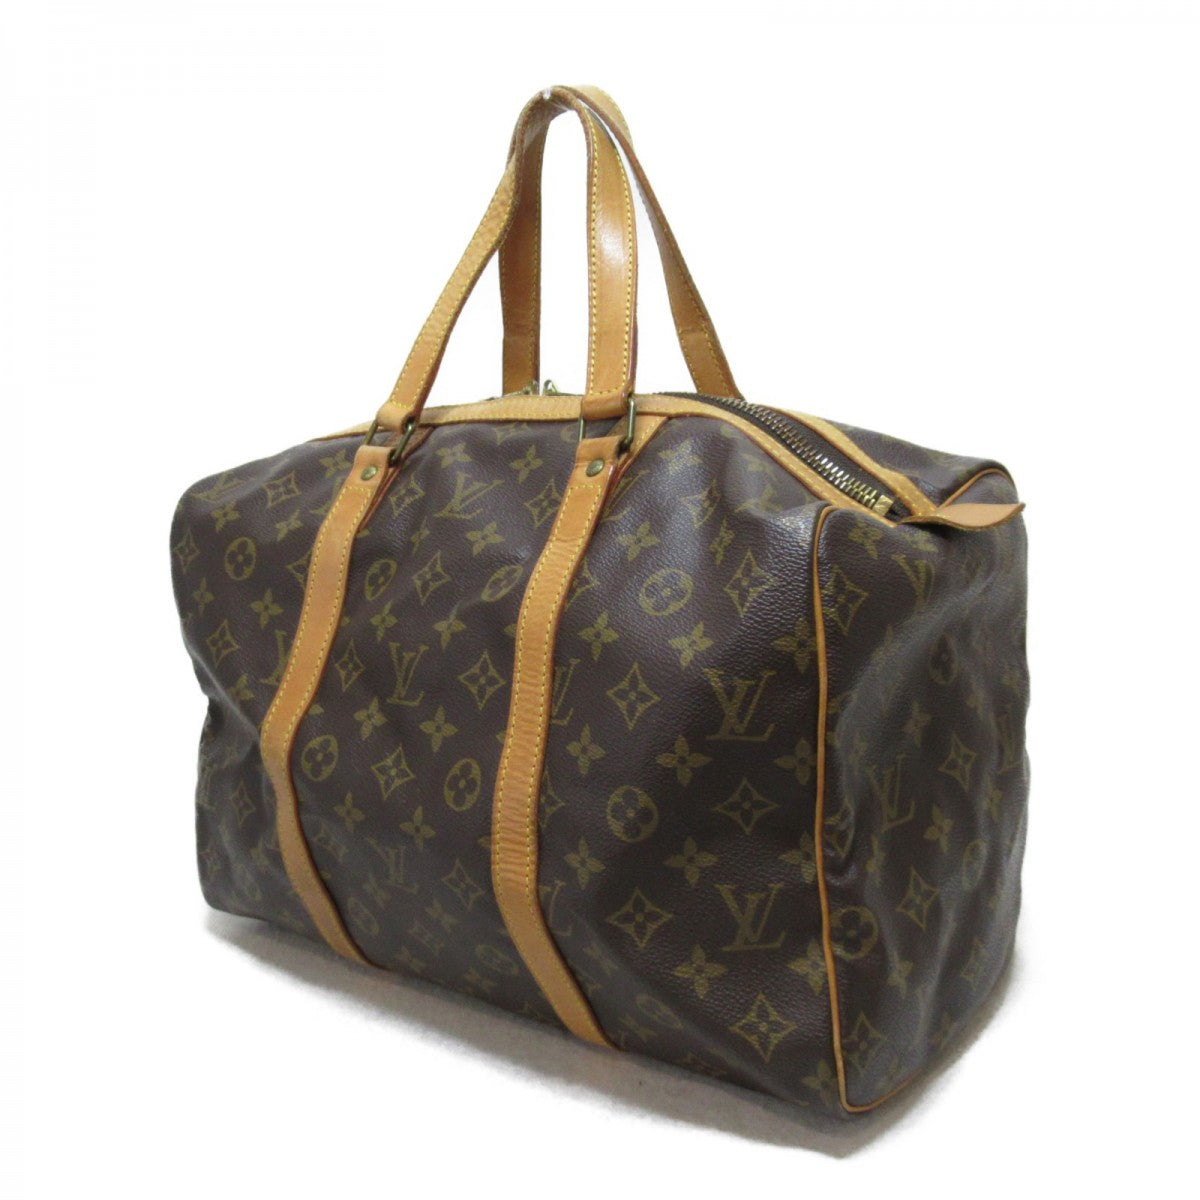 Louis Vuitton Monogram Sac Souple 35 Boston Bag M41626